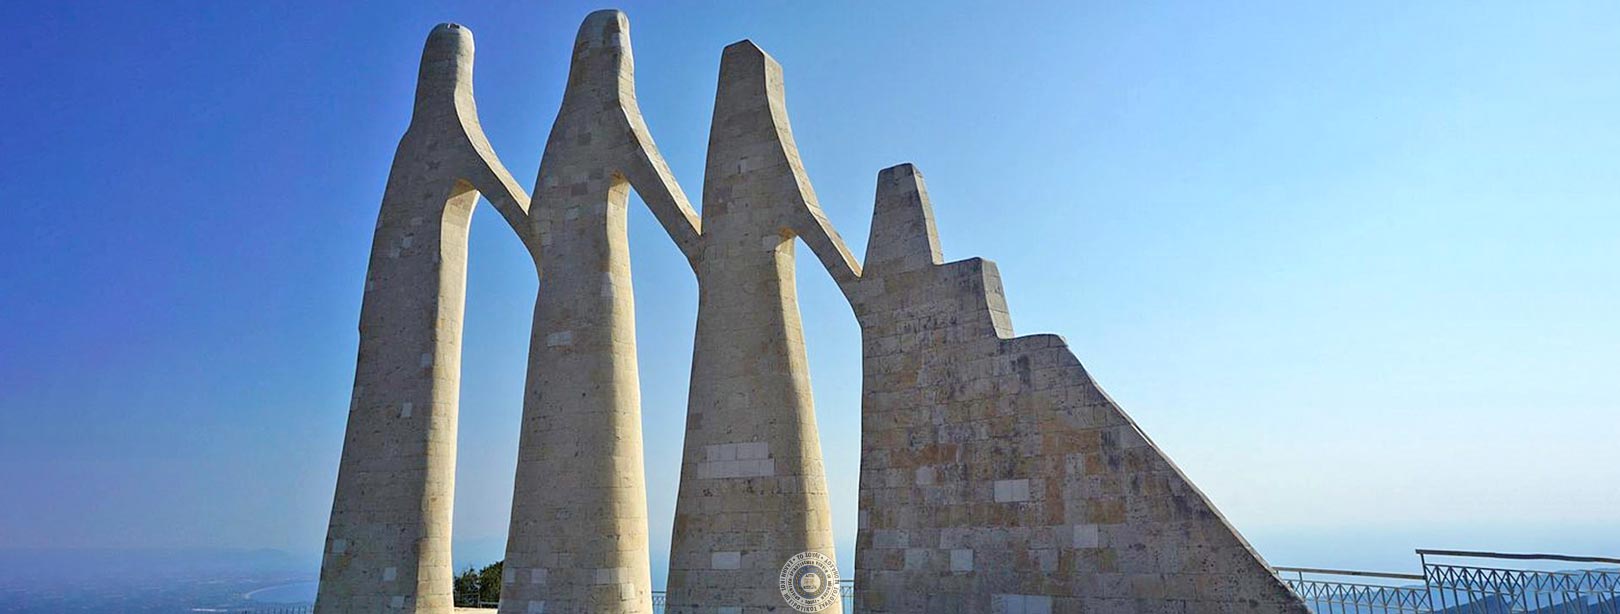 Μνημείο Ζαλόγγου: Οι Ηρωίδες Σουλιώτισσες